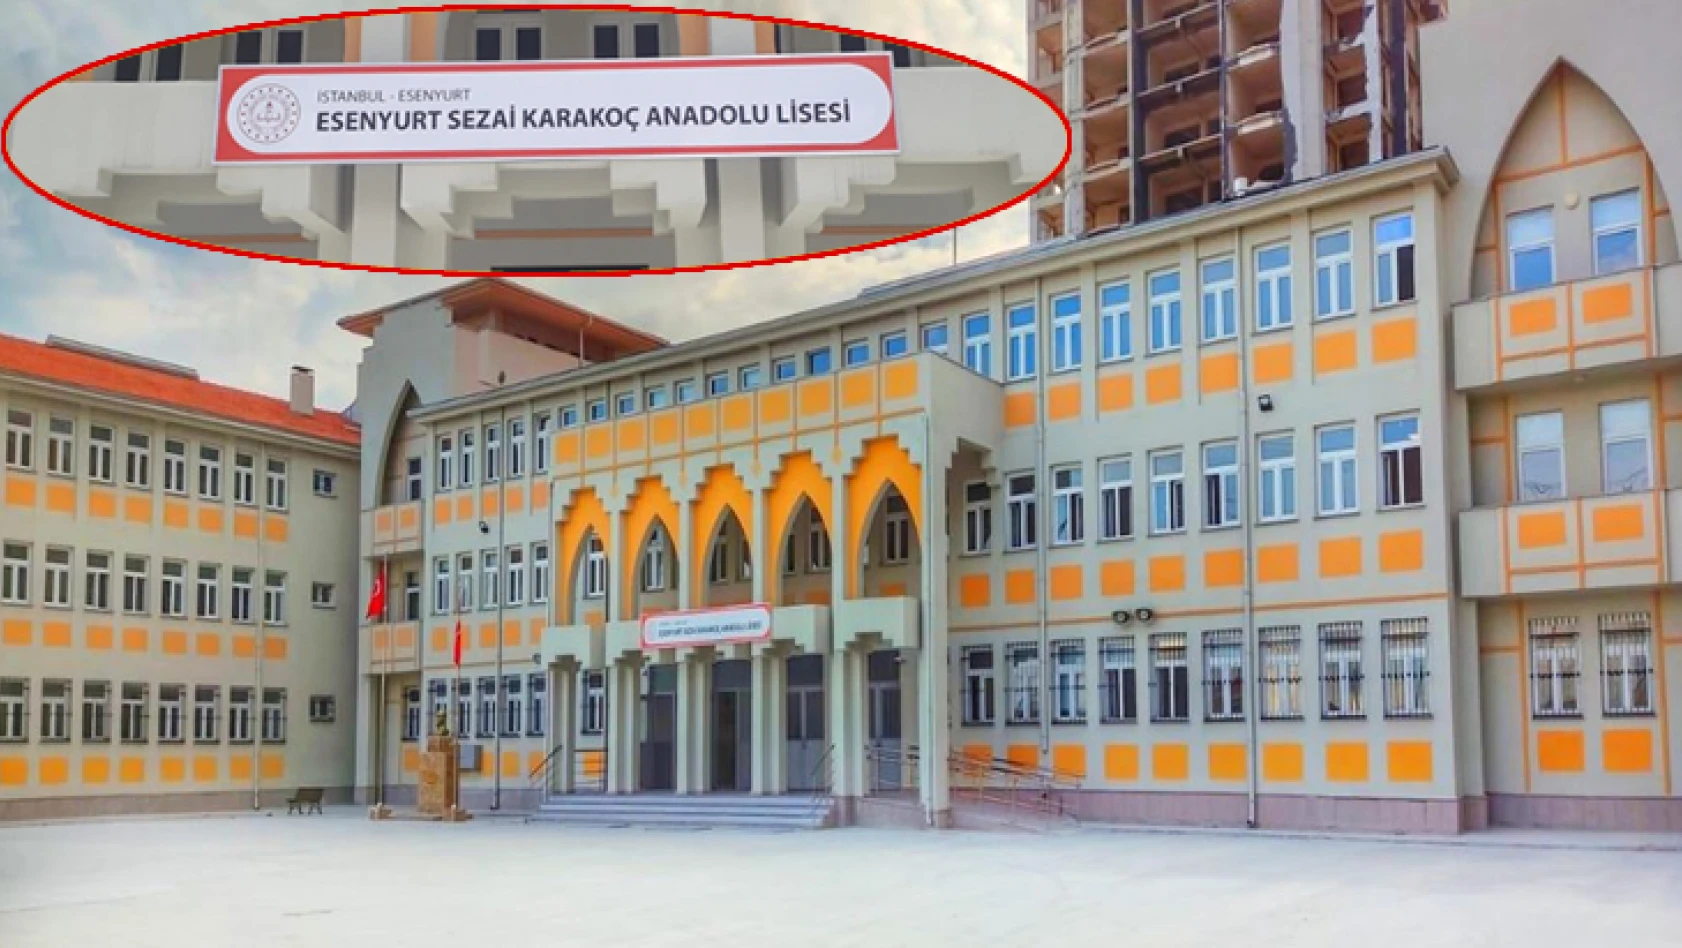 Esenyurt Sezai Karakoç Anadolu Lisesi'nden okula kütüphane kurulması için kitap bağışı çağrısı